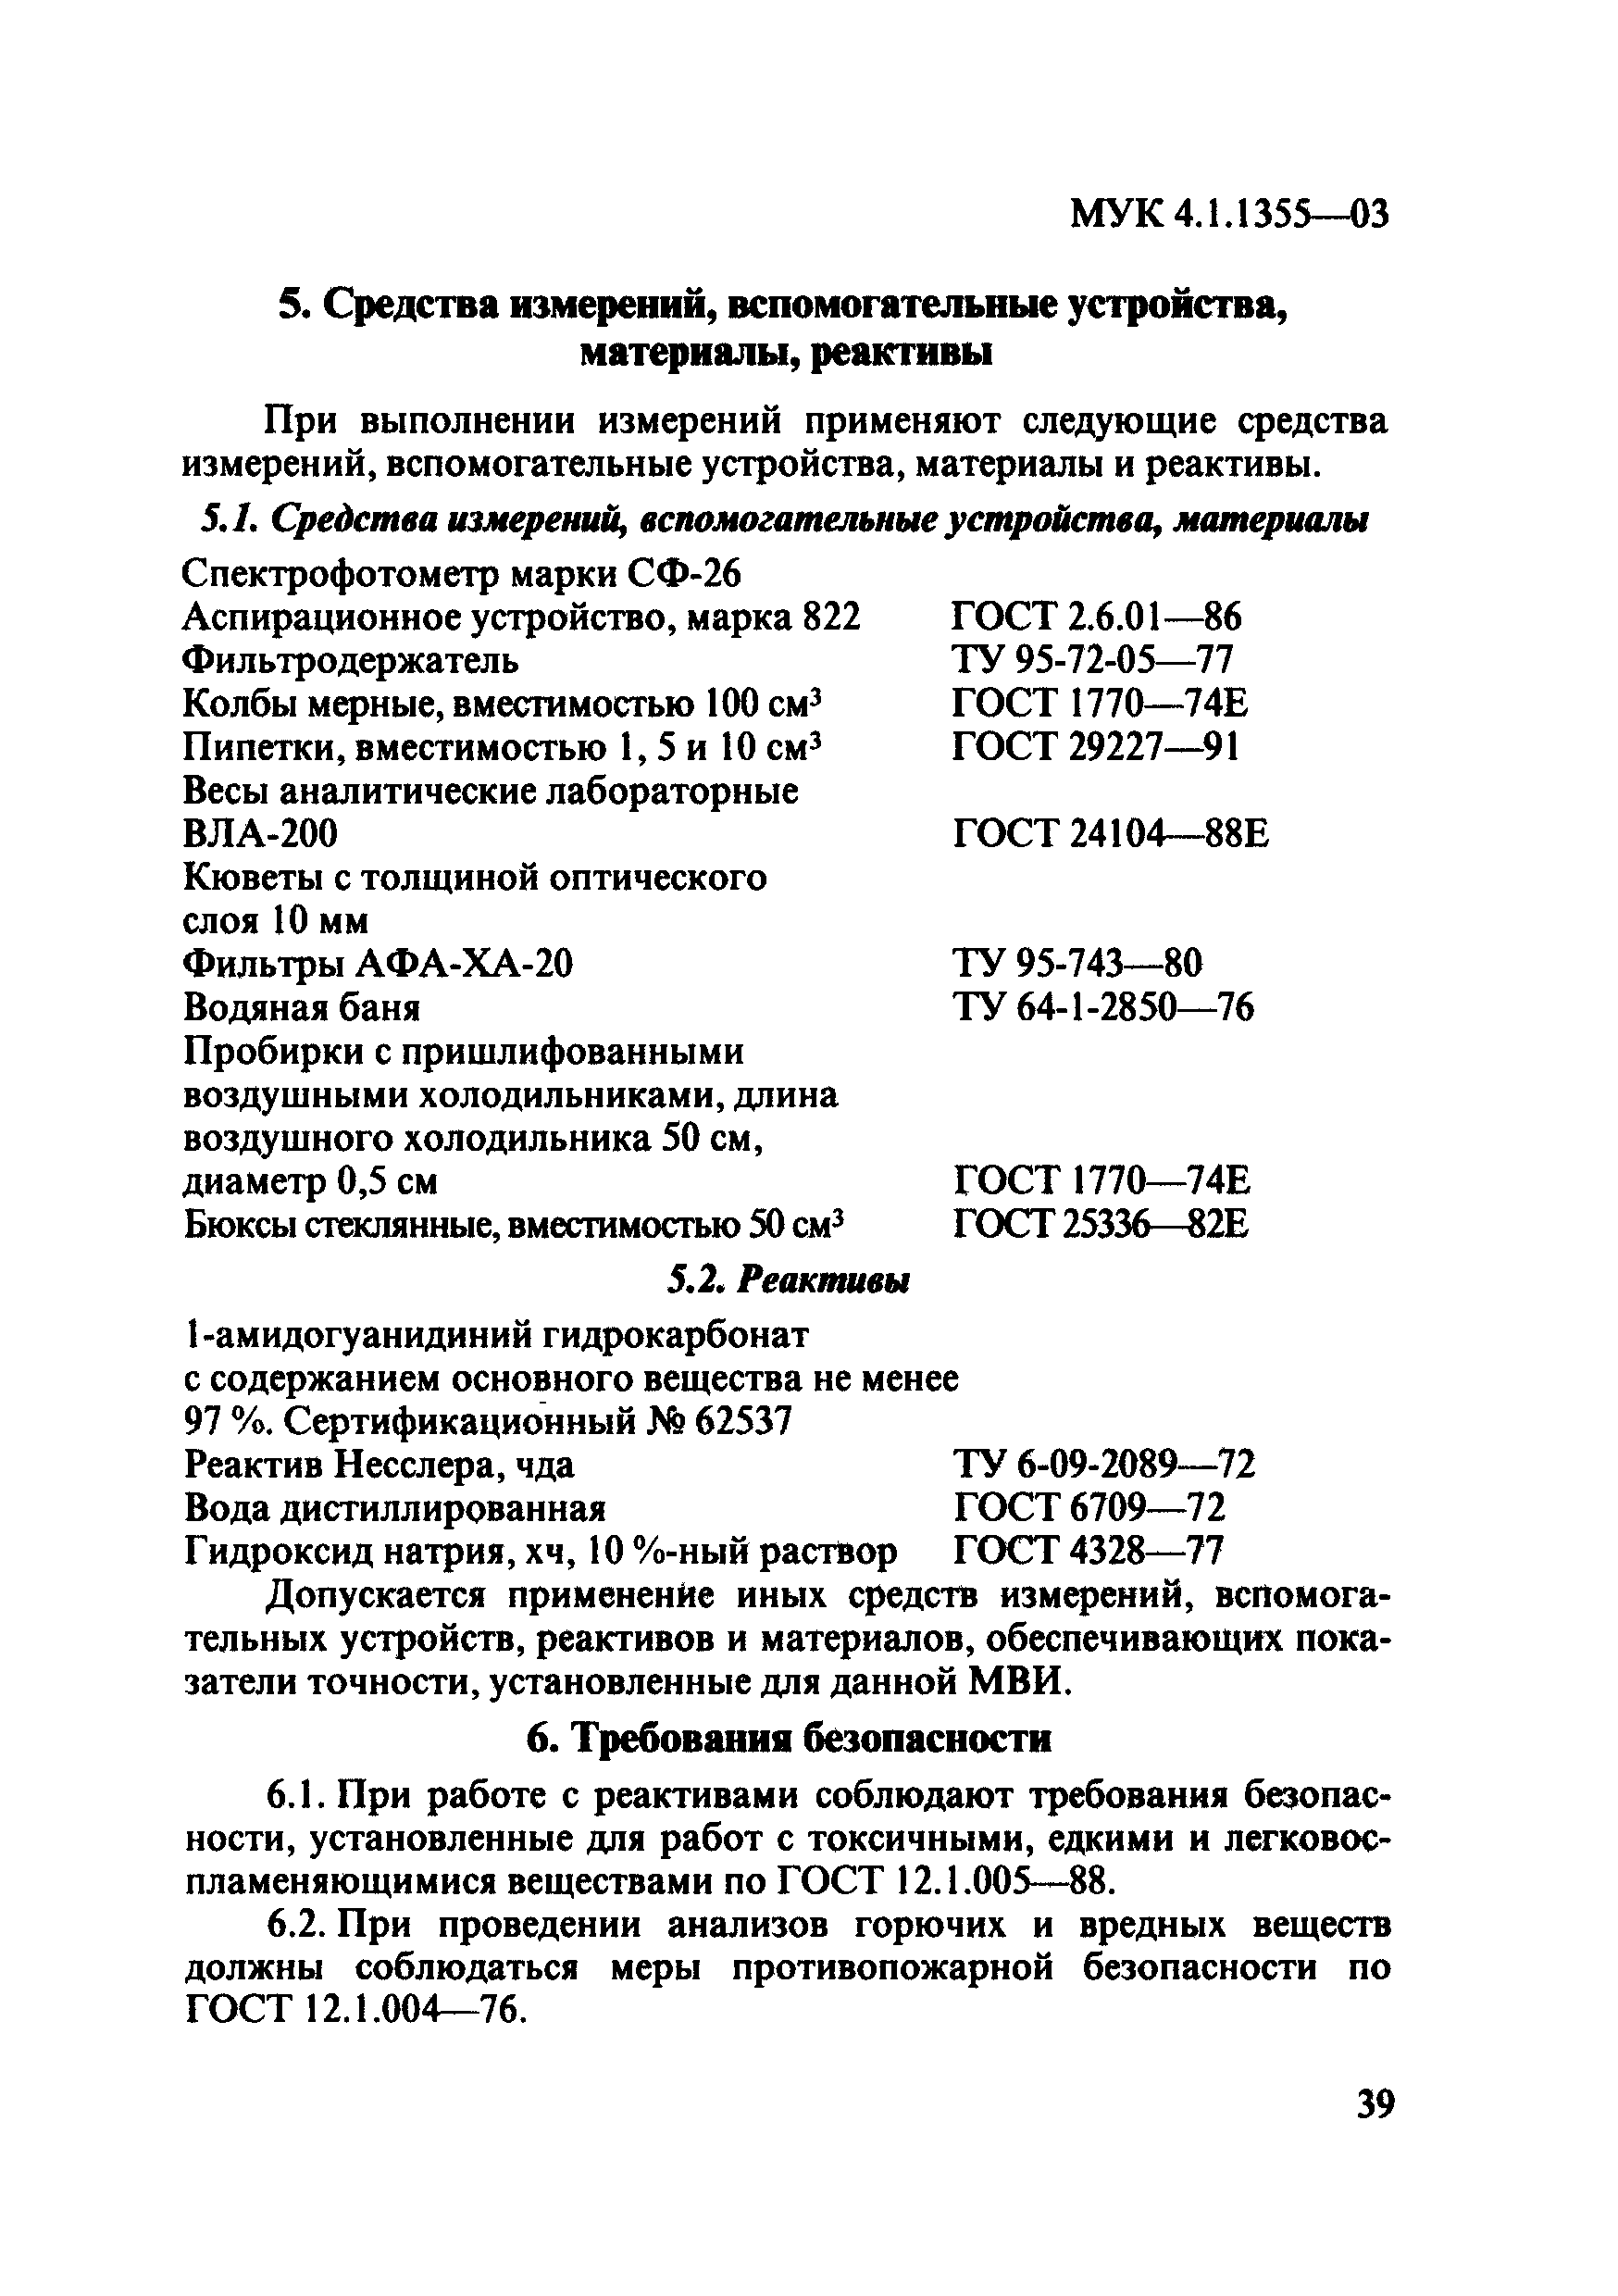 МУК 4.1.1355-03